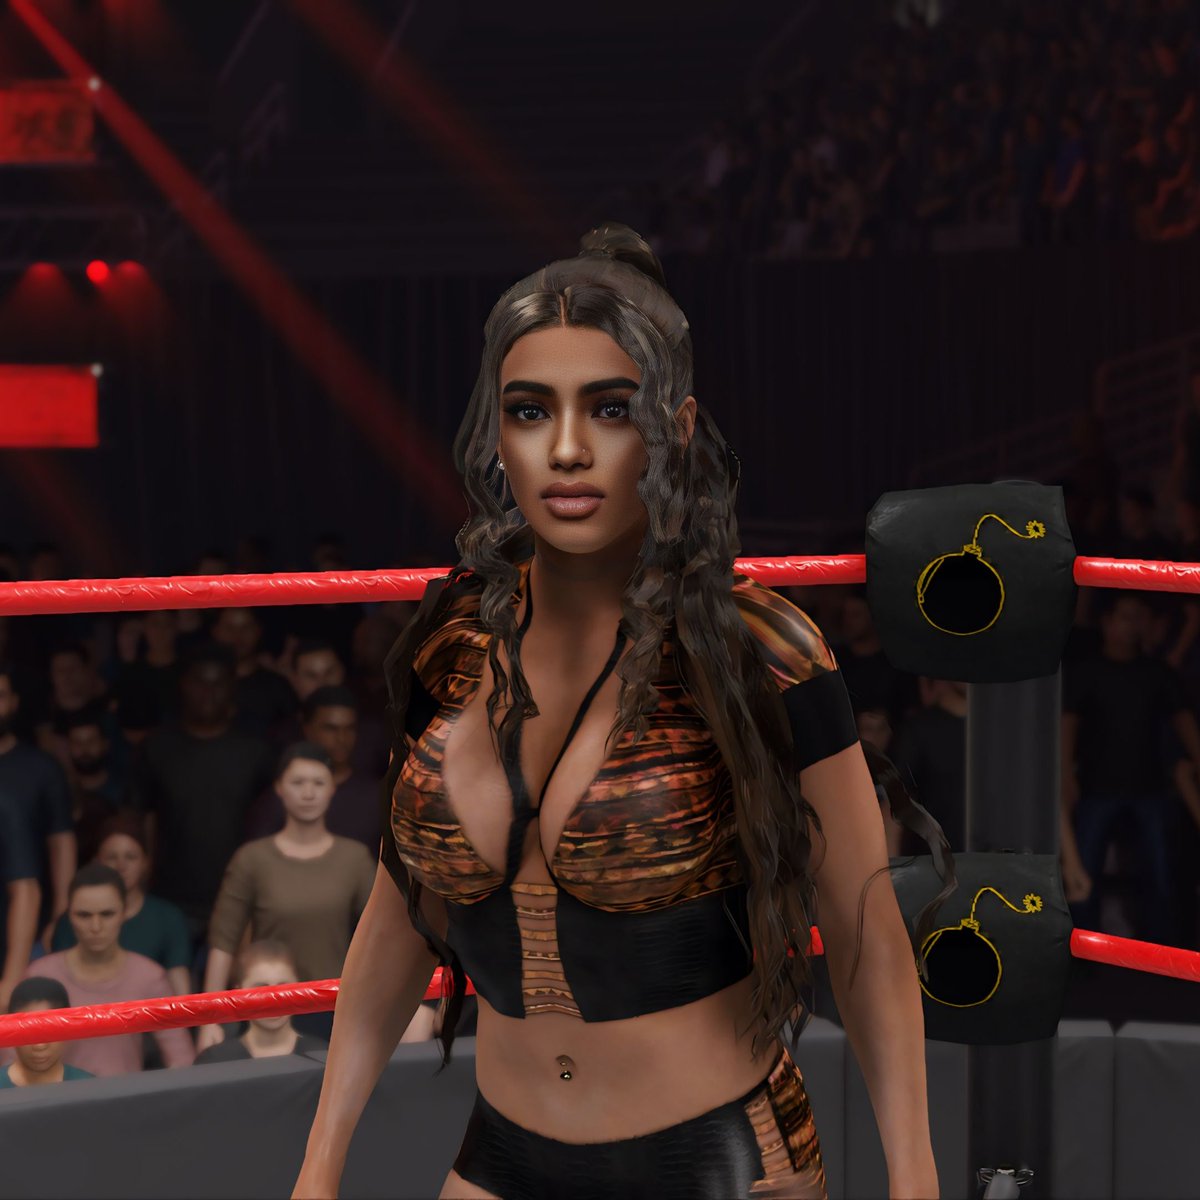 Mira actually looks cute as Avantika

#WWE